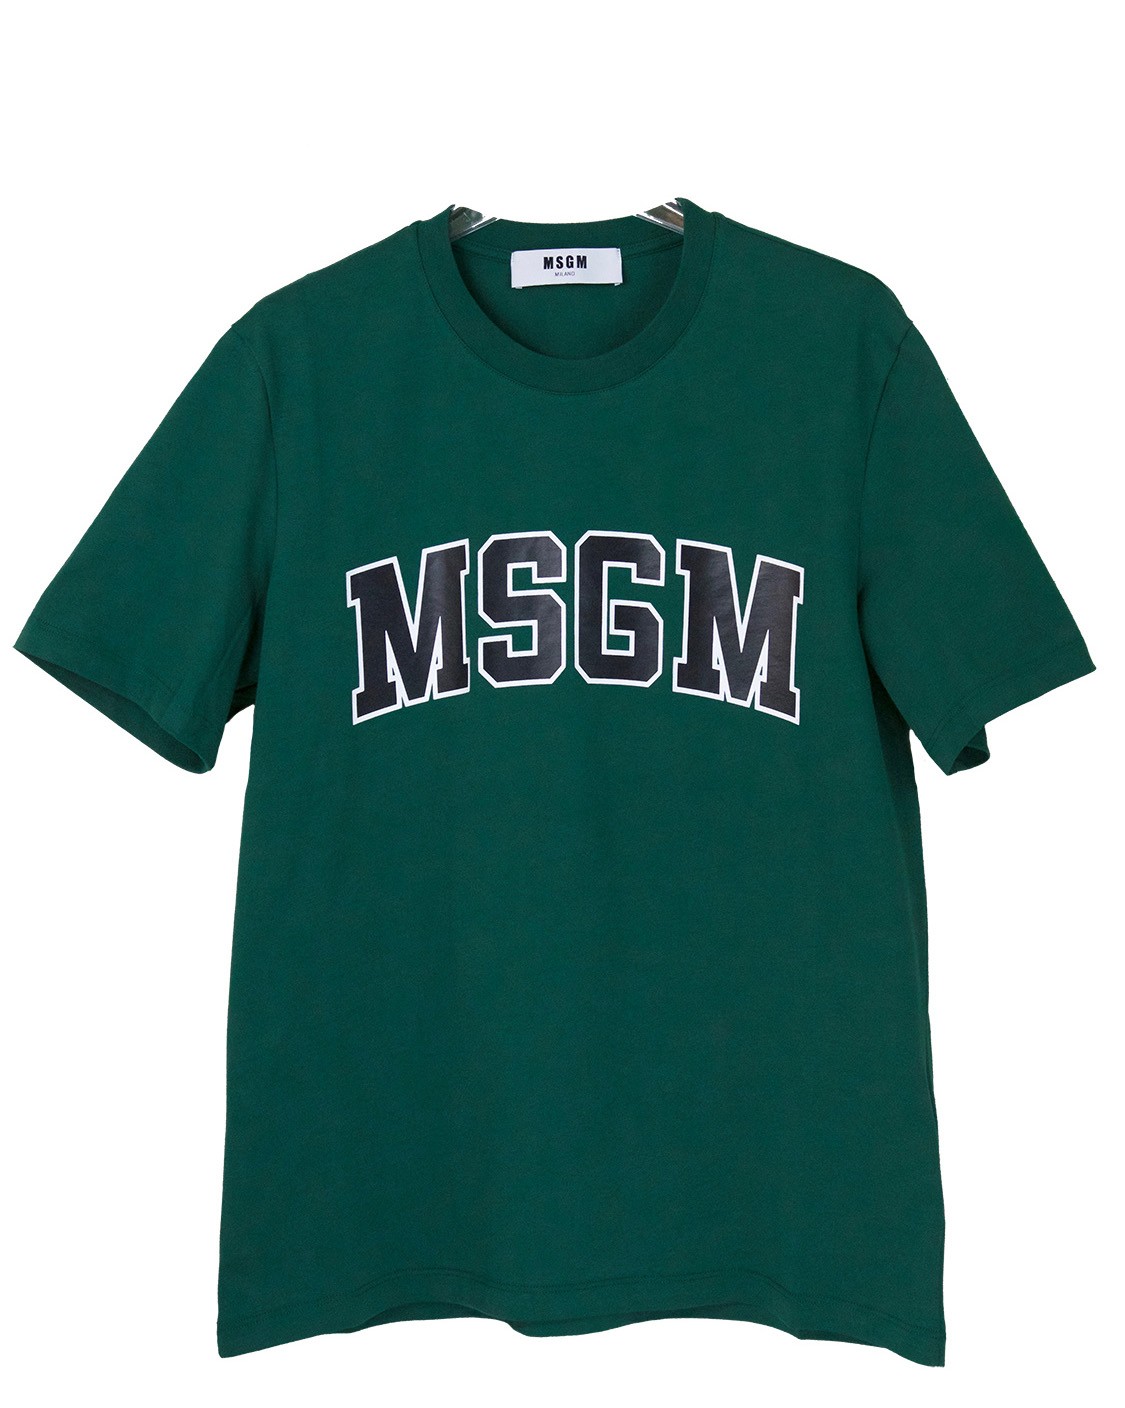 shop MSGM  T-shirts: T-shirt MSGM, maniche corte, girocollo, verde scuro con logo nero bordato di bianco.

Composizione: 100% cotone.
 number 865